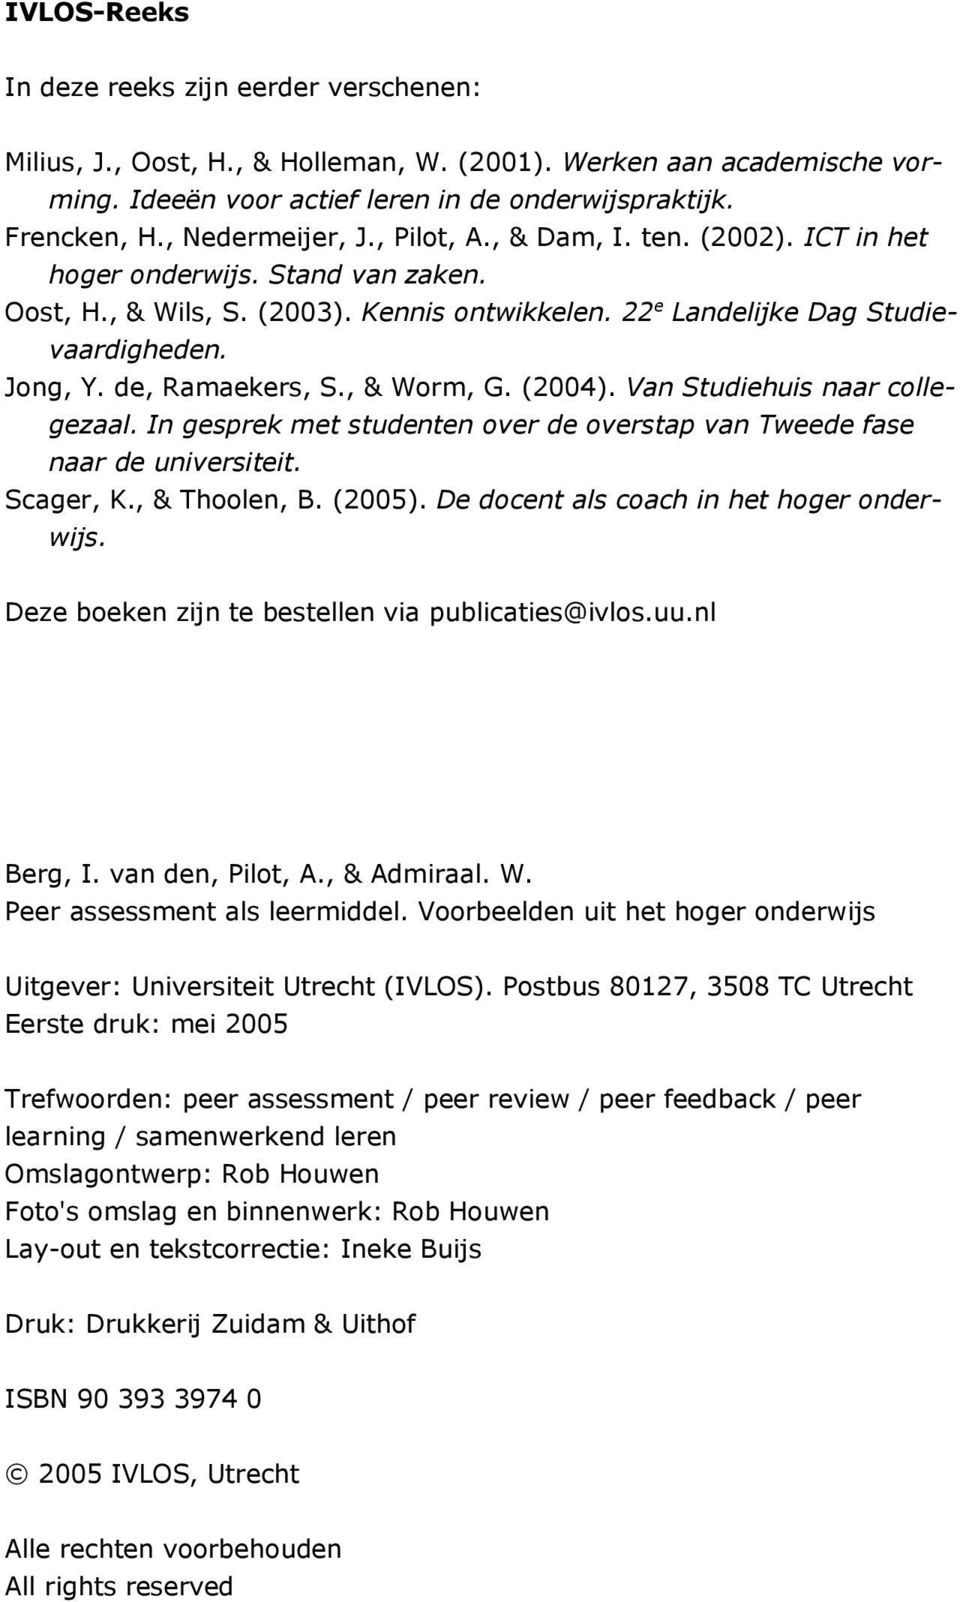 de, Ramaekers, S., & Worm, G. (2004). Van Studiehuis naar collegezaal. In gesprek met studenten over de overstap van Tweede fase naar de universiteit. Scager, K., & Thoolen, B. (2005).